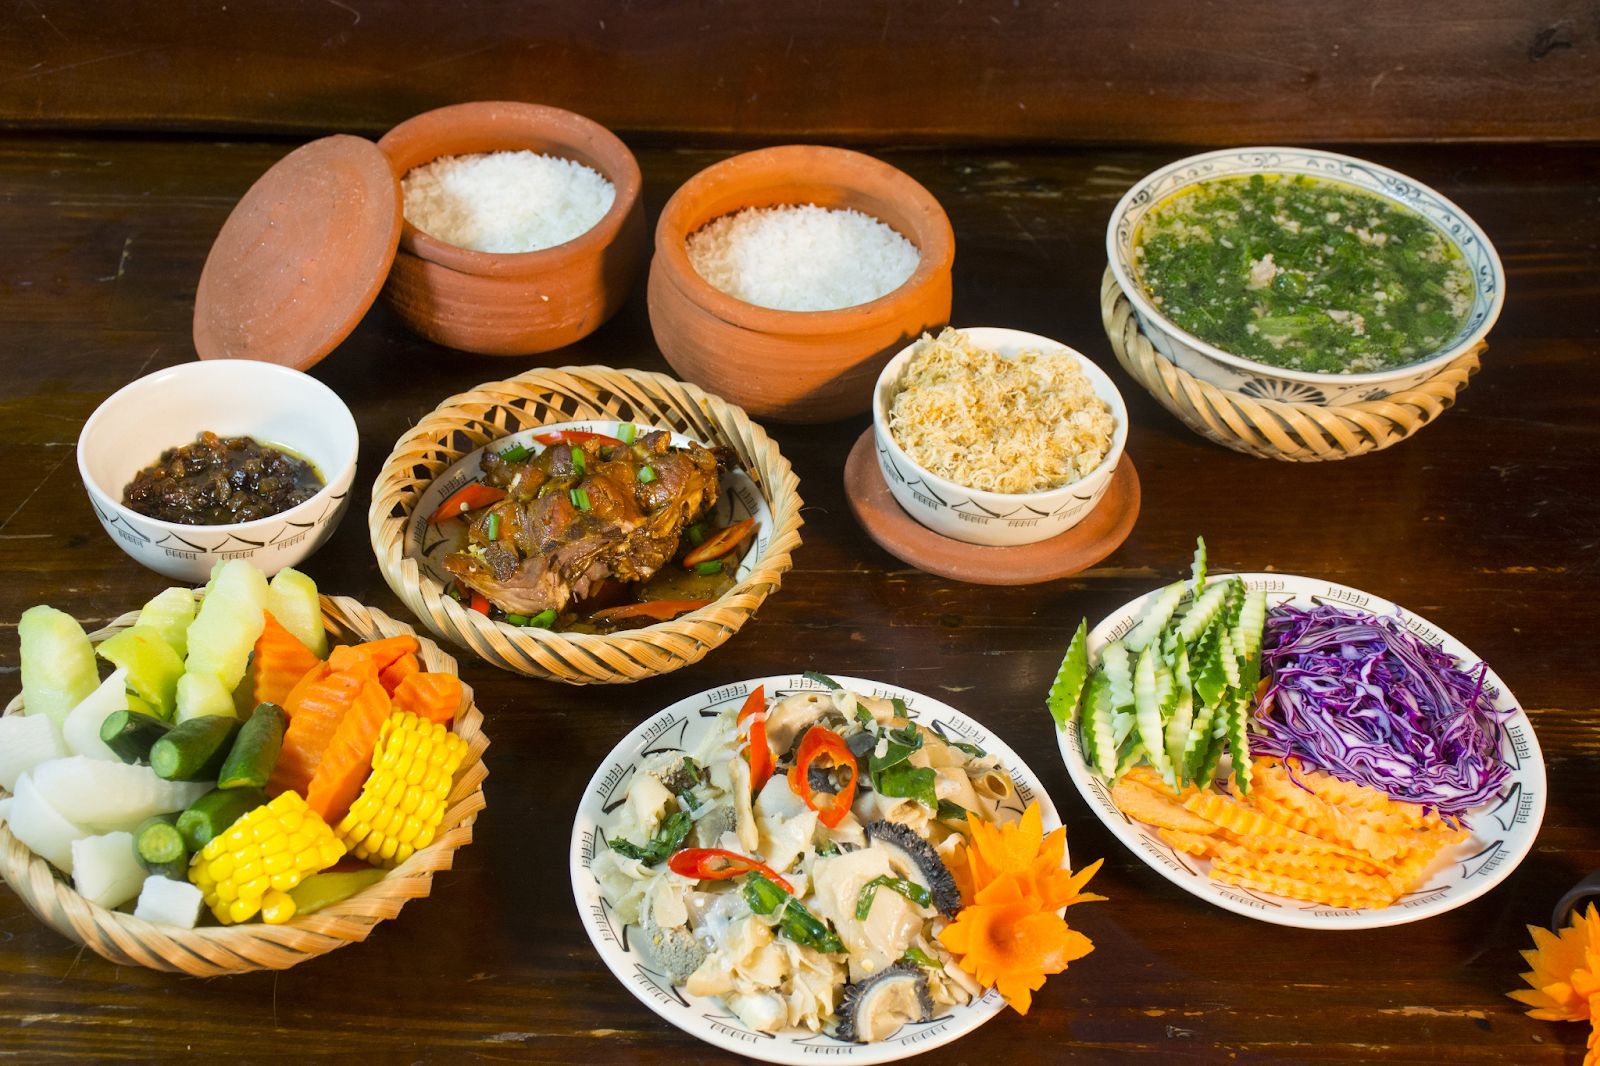 Cơm niêu đã xuất hiện từ lâu và cũng trở thành một món ăn phổ biến ở Huế